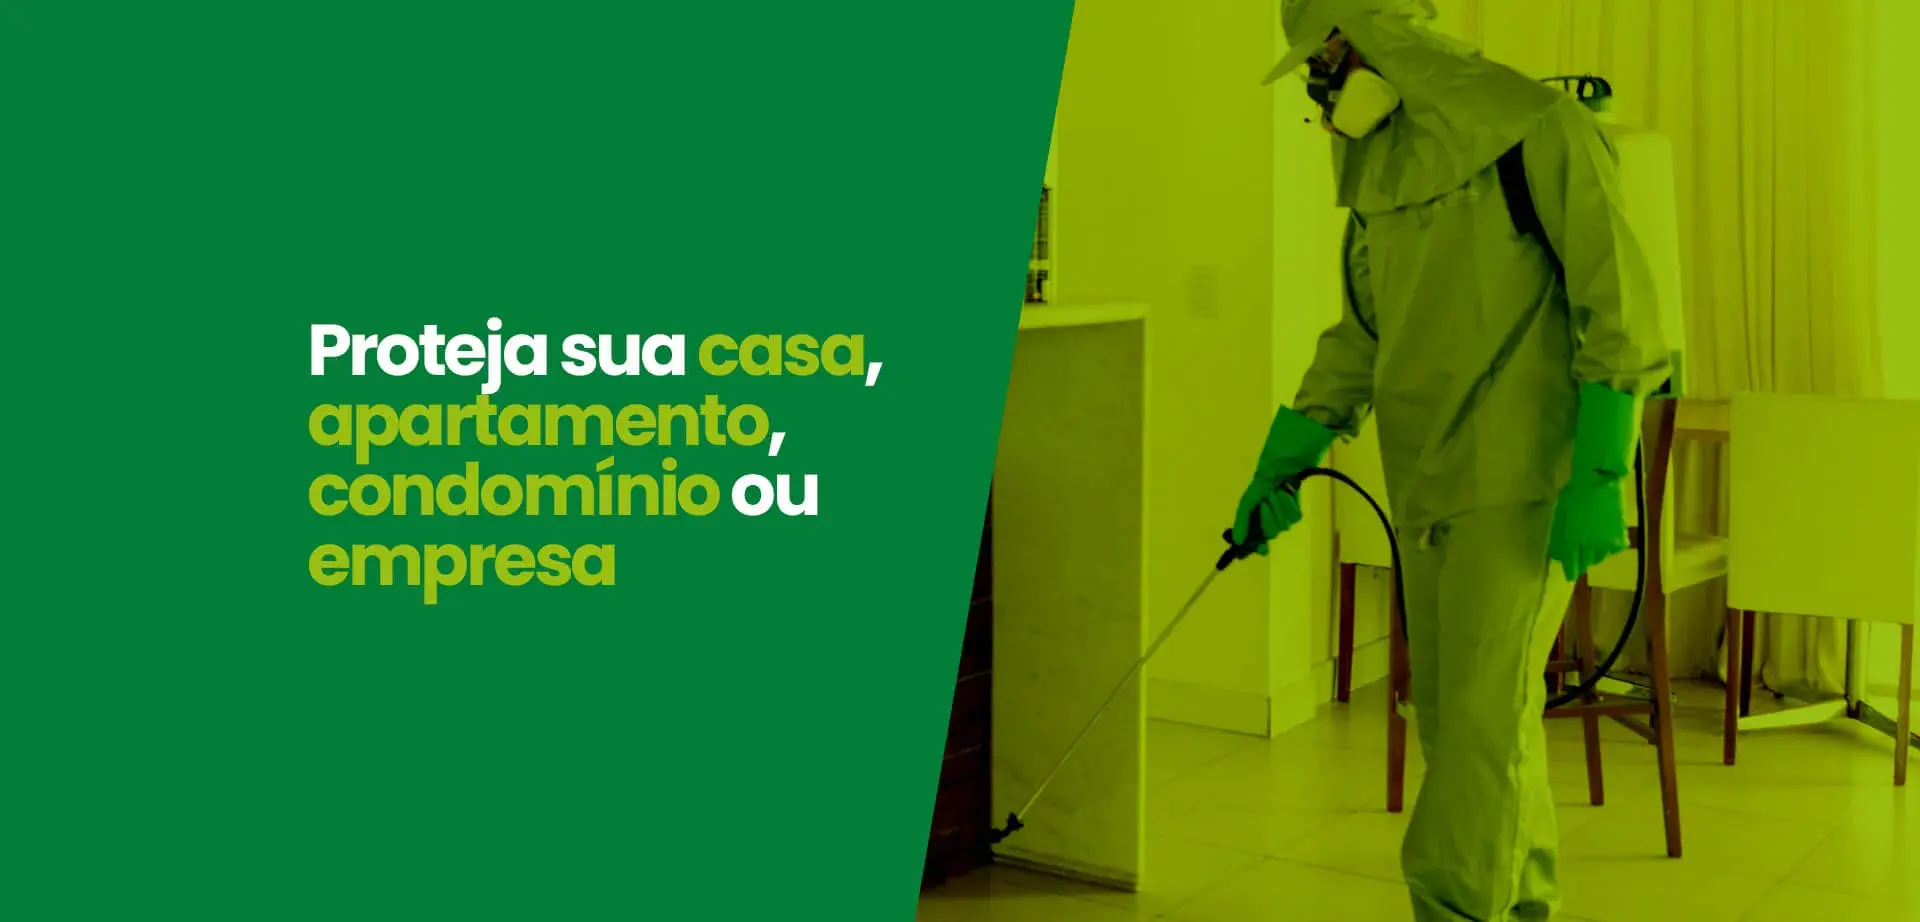 Proteja sua casa agora mesmo! Astral Saúde Ambiental - RJ Oeste